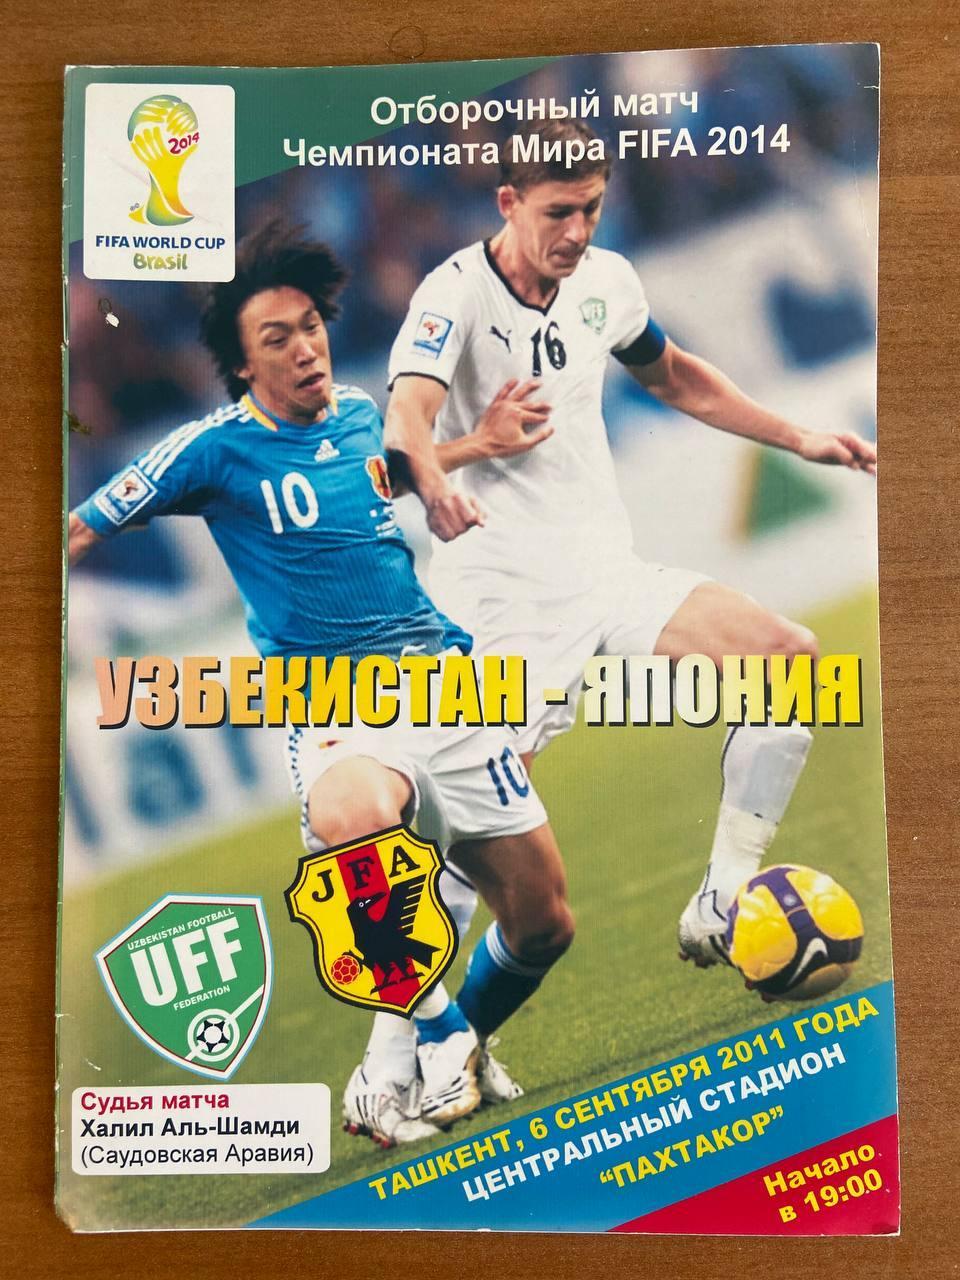 Узбекистан (сборная) - Япония (сборная), 6 сентября 2011 г.